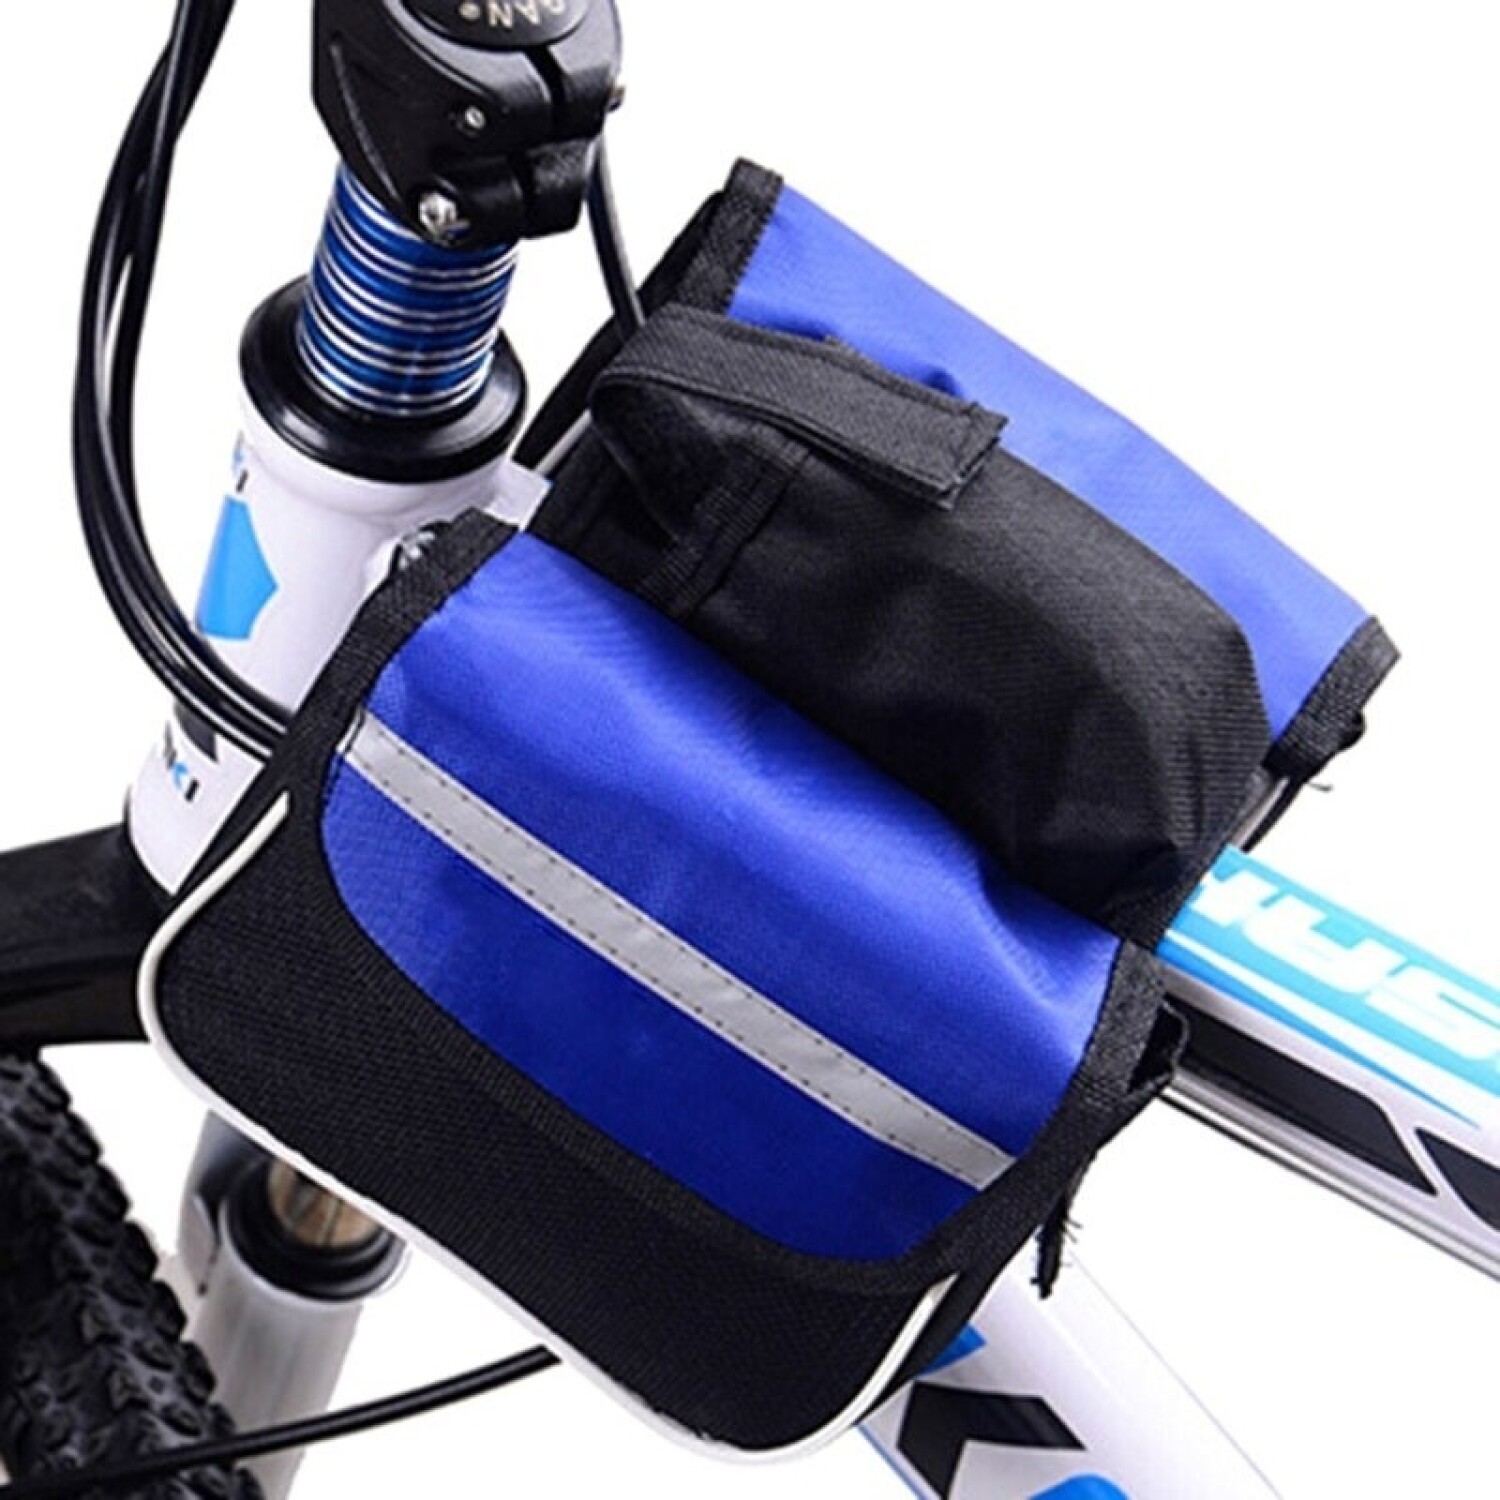 https://f.fcdn.app/imgs/30d0b5/www.atrixuy.com/atriuy/f0b2/original/catalogo/TBFIT71_AZUL_1/1500-1500/alforja-de-bici-bicicleta-bolso-impermeable-para-cuadro-variante-color-azul.jpg